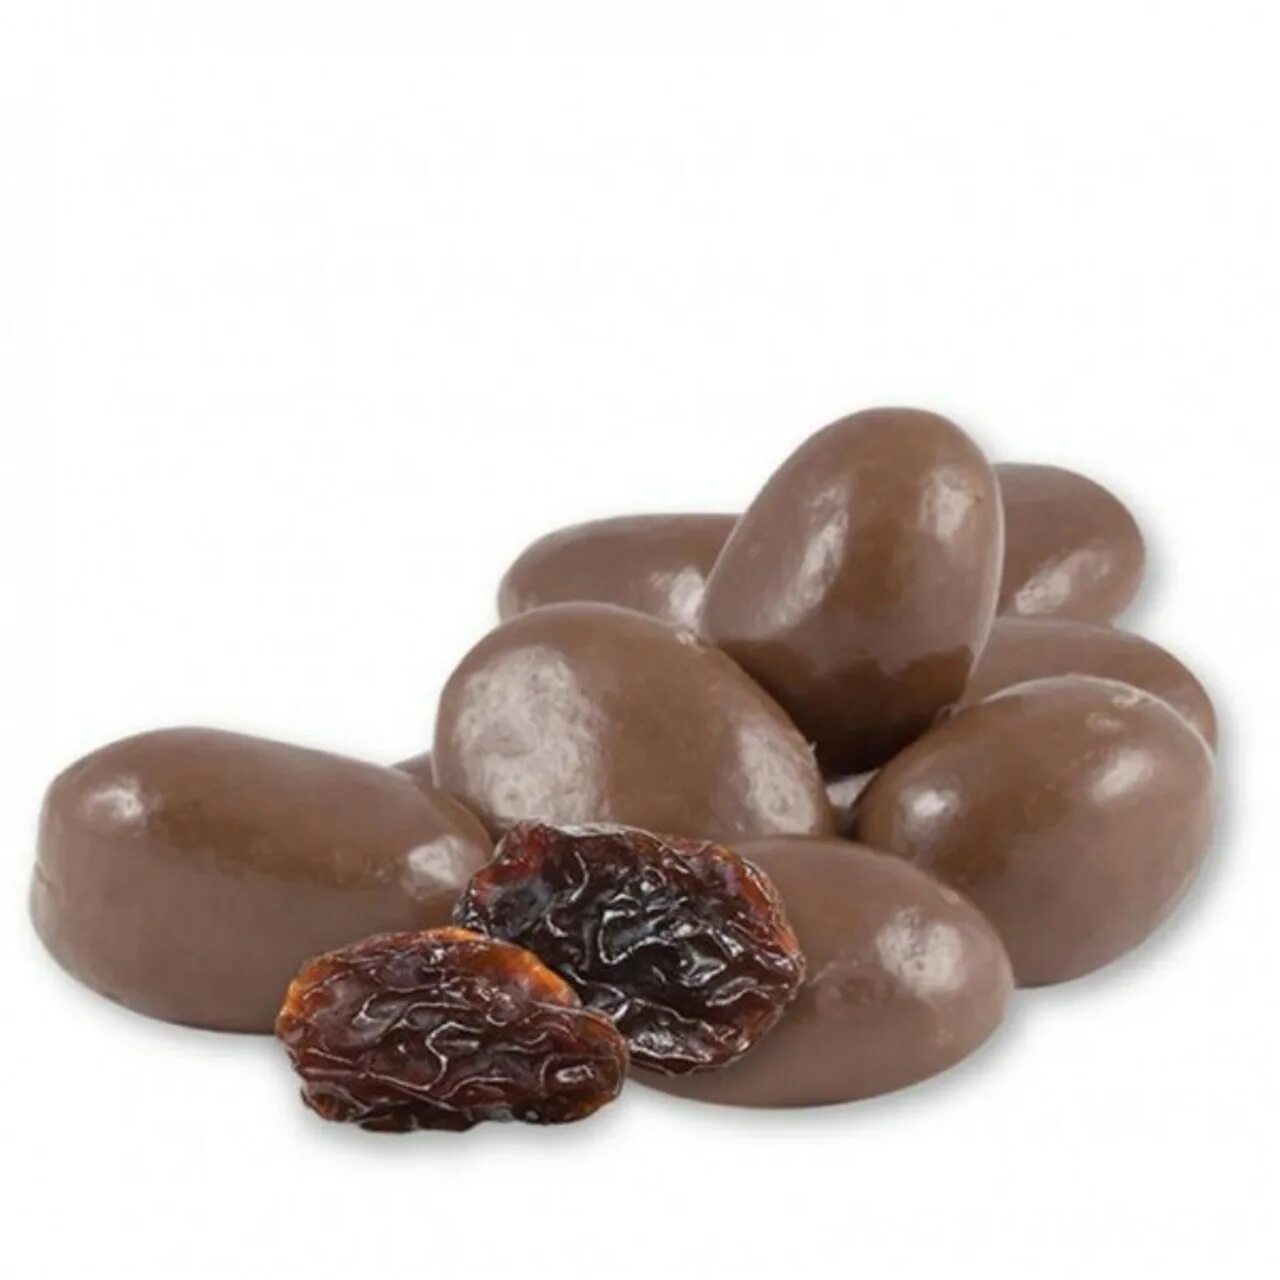 Изюм в шоколаде Raisins. Драже Изюм джамбо в бельгийском Молочном шоколаде (премиум). Изюм в шоколадной глазури. Конфеты Изюм в шоколаде.